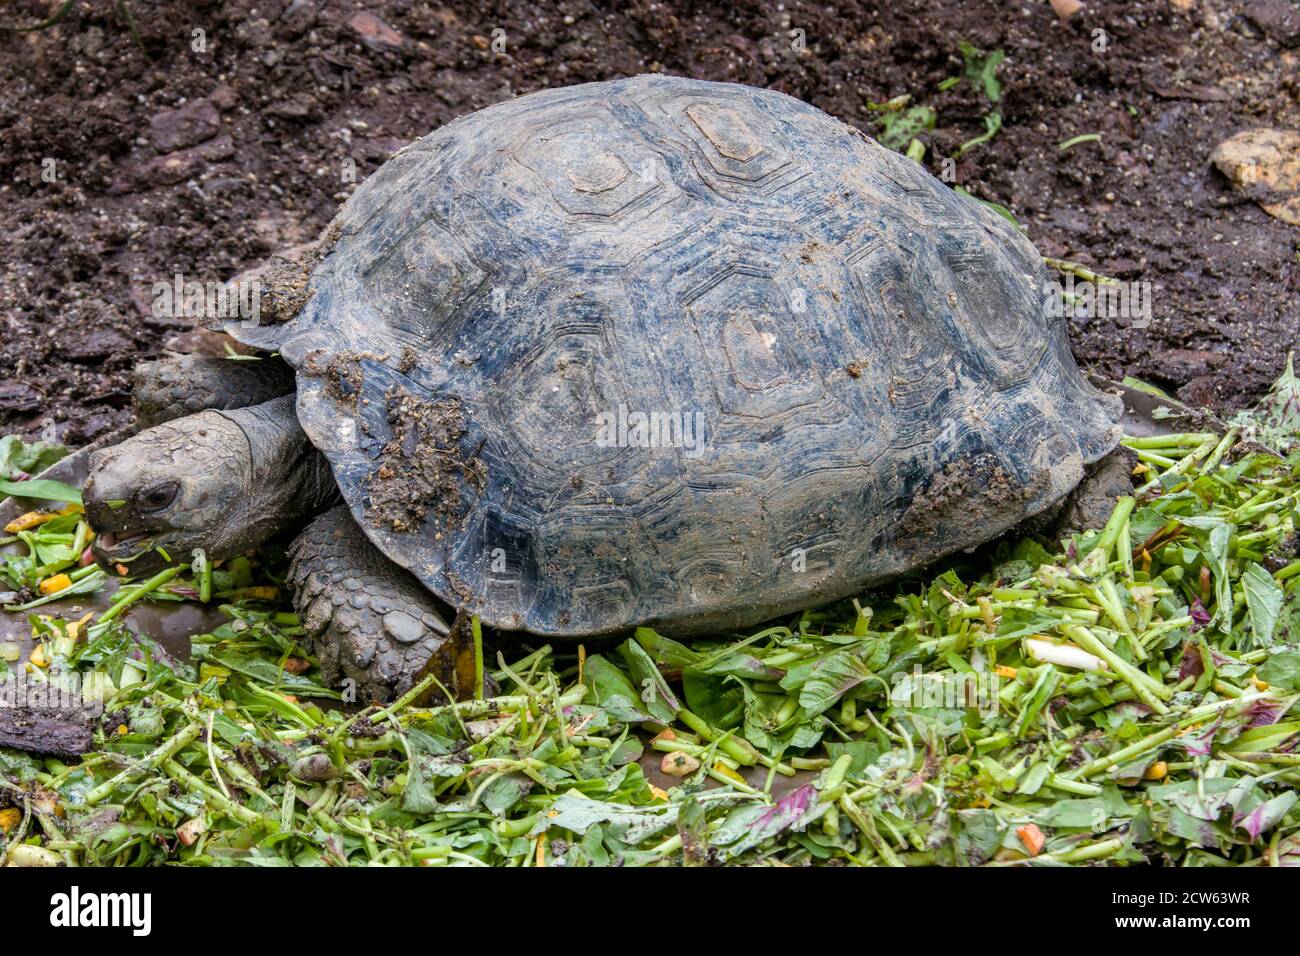 La tortue forestière asiatique (Manouria emys) est une espèce de tortue de la famille des Testudinidae. L'espèce est endémique de l'Asie du Sud-est. Banque D'Images